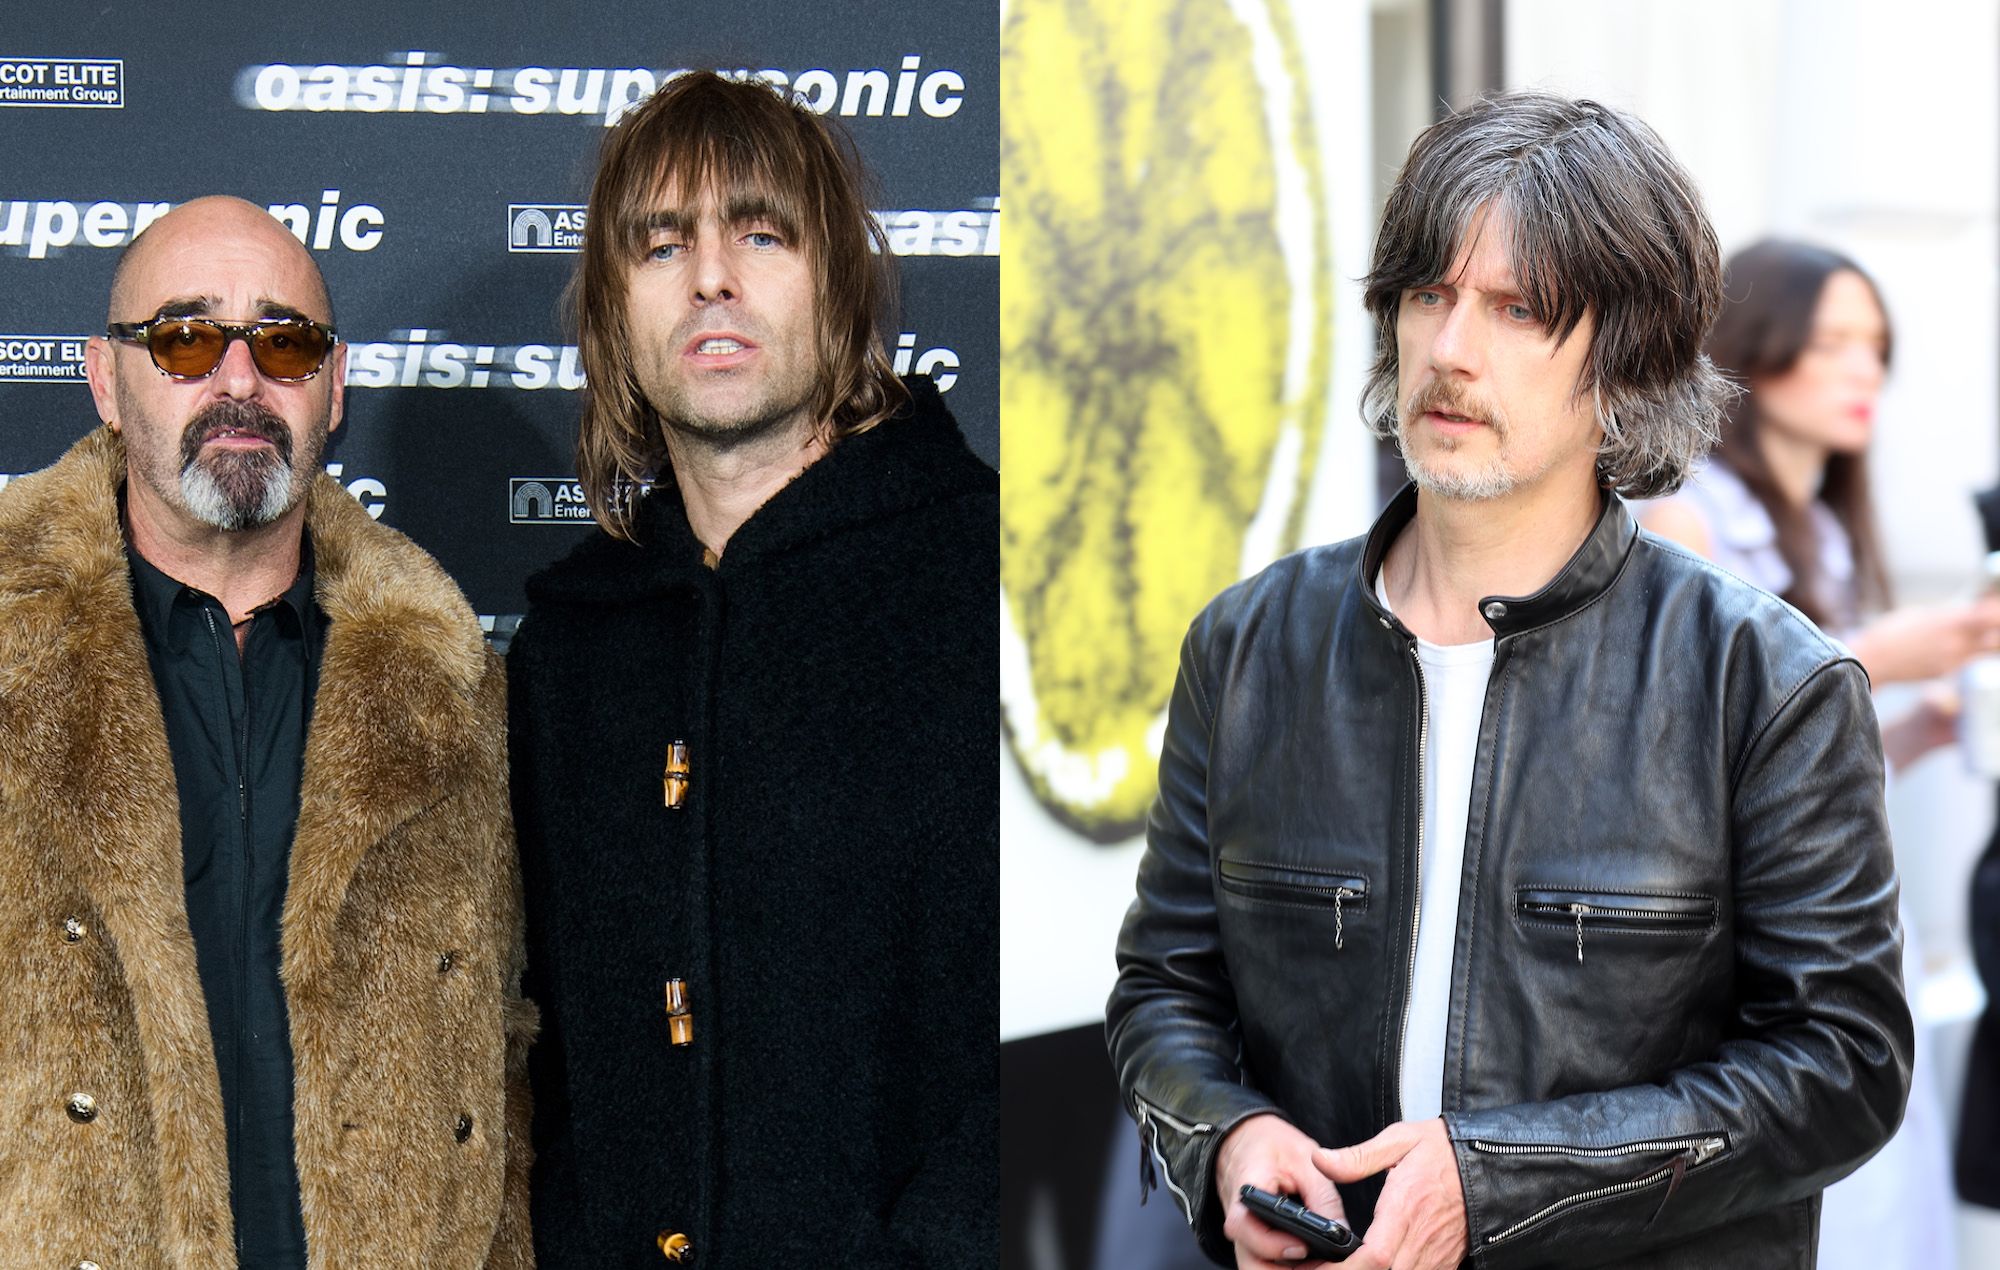 Bonehead dice que ha escuchado el "muy buen" álbum conjunto de Liam Gallagher y John Squire